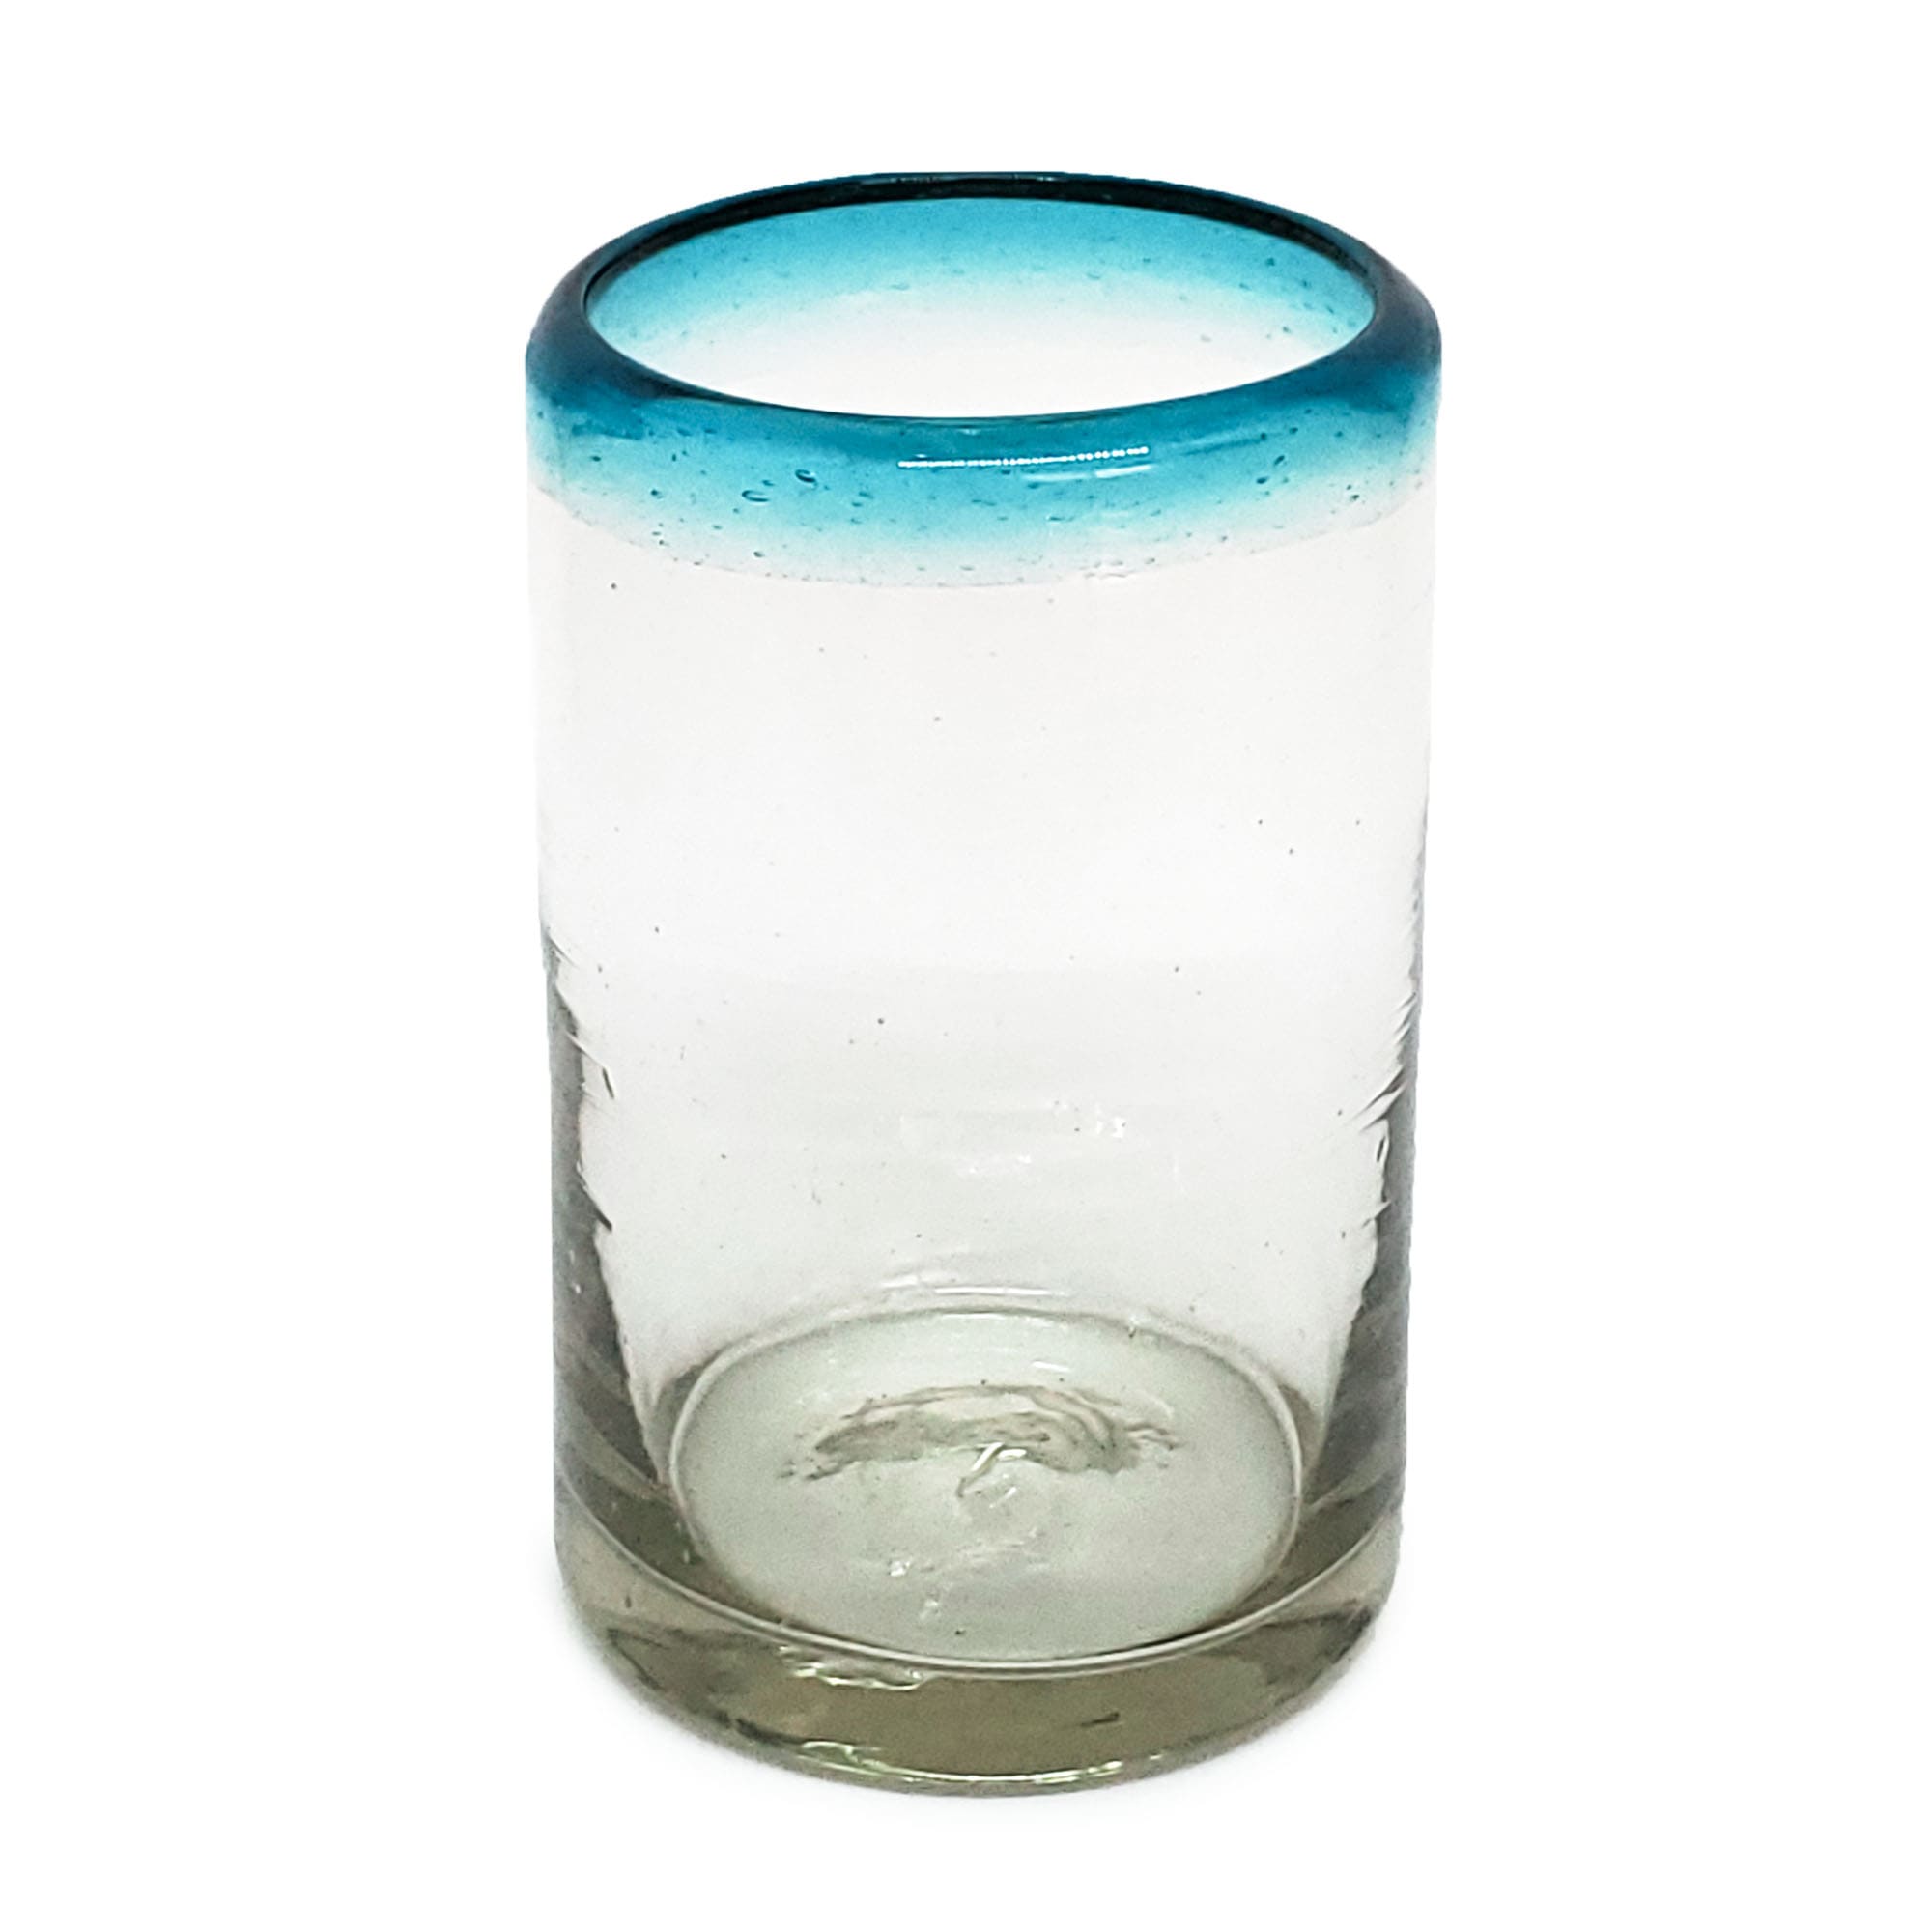 VIDRIO SOPLADO / Juego de 6 vasos para jugo con borde azul aqua